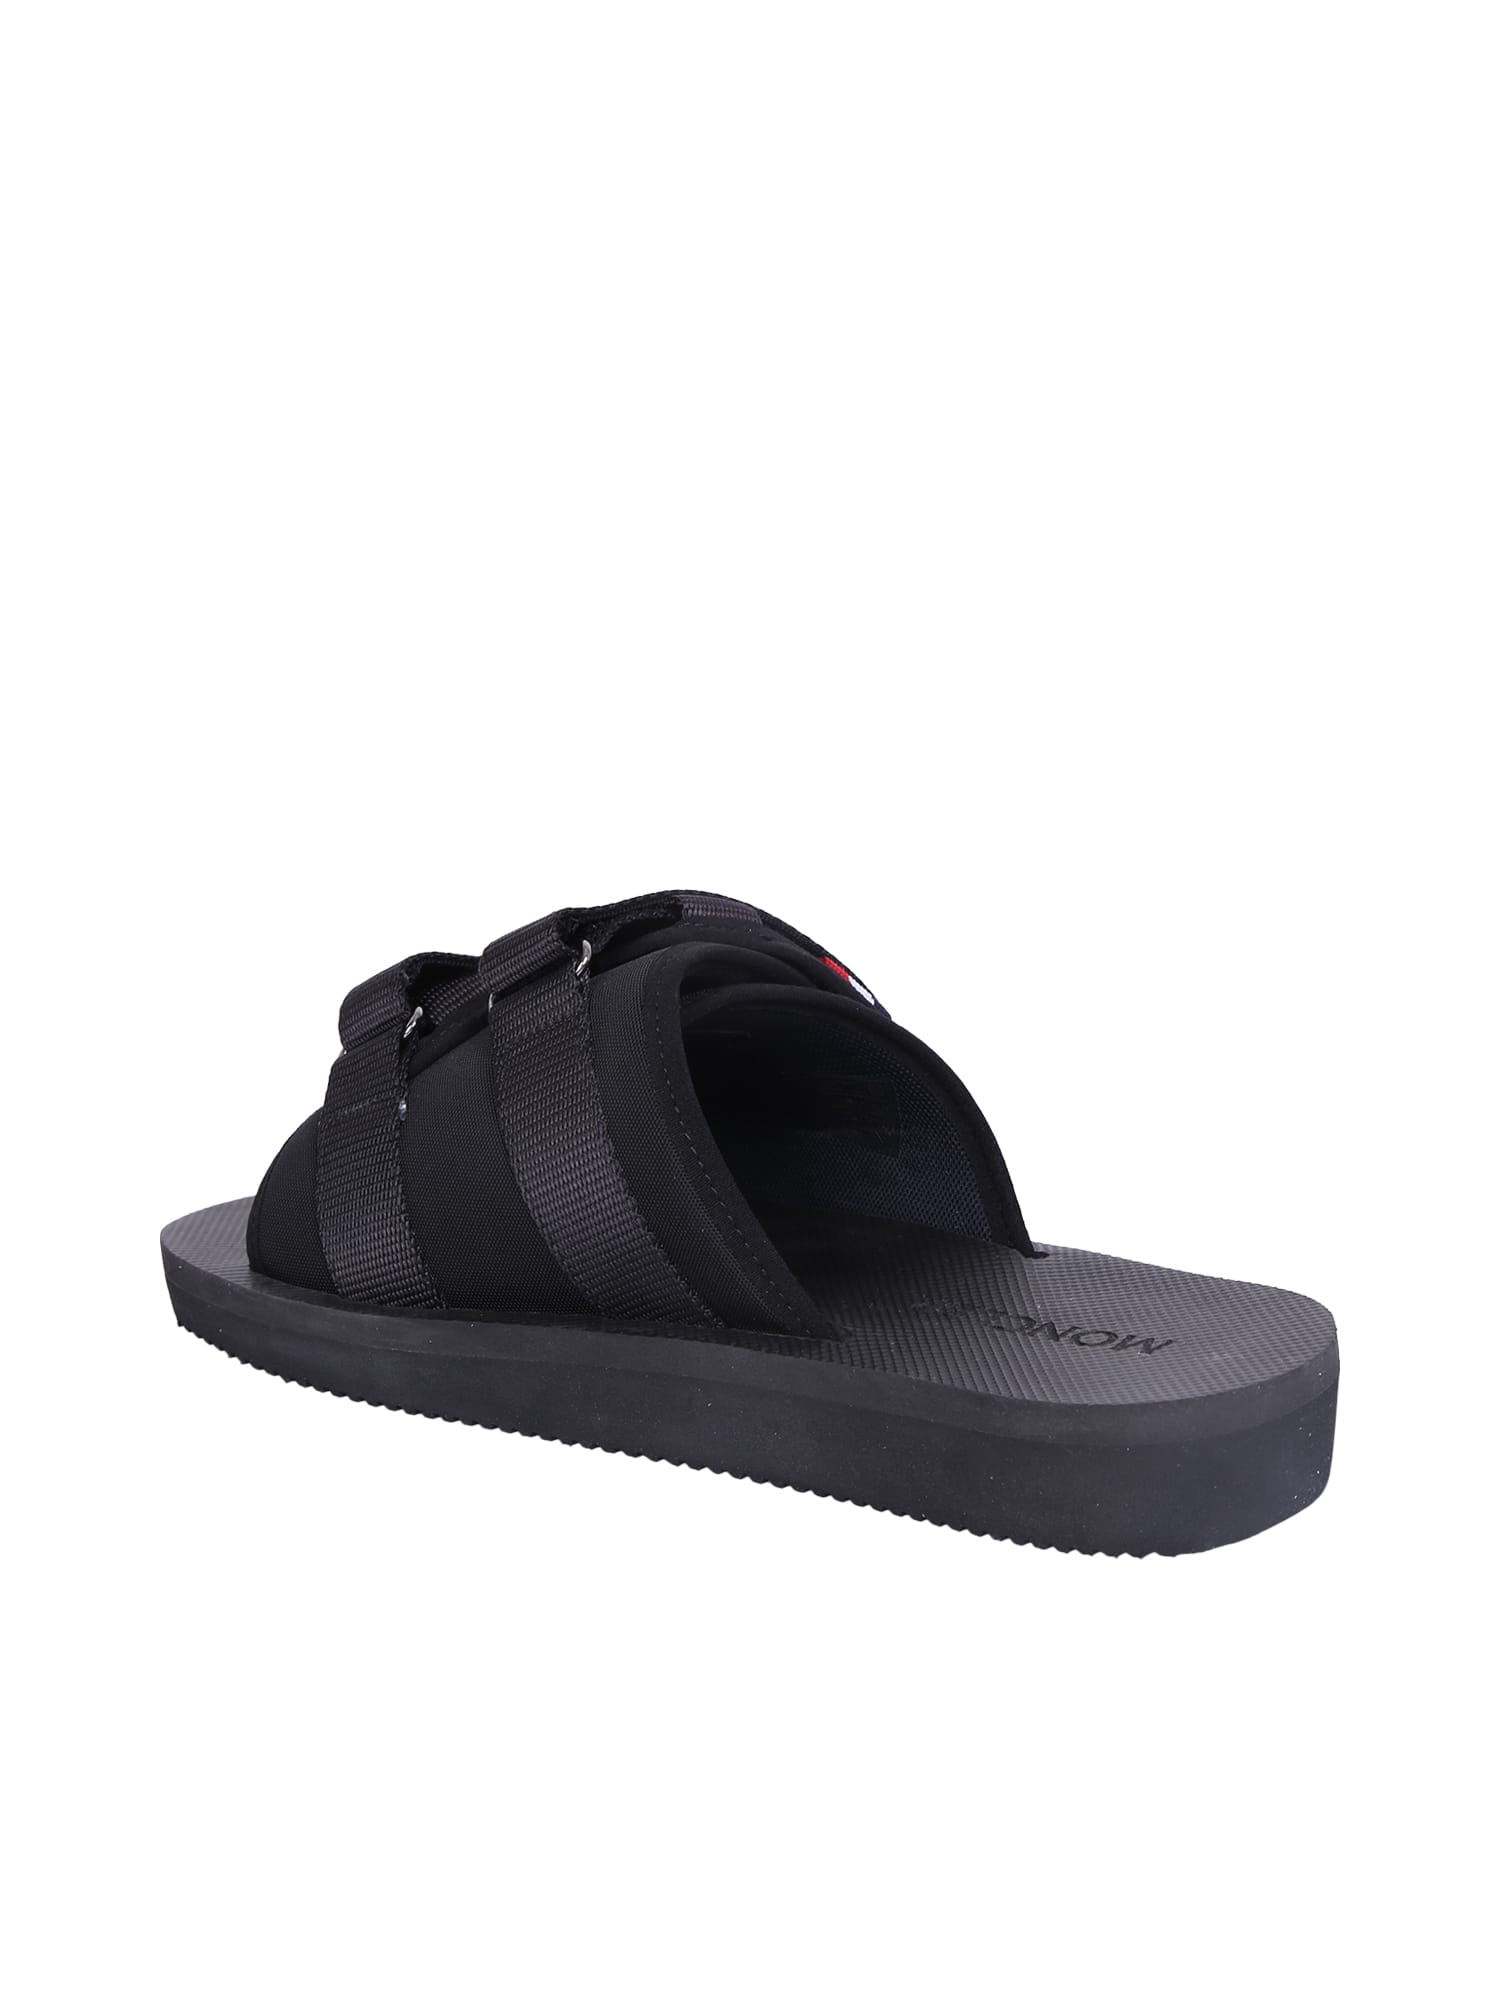 Shop Moncler Slideworks Sandals In Black